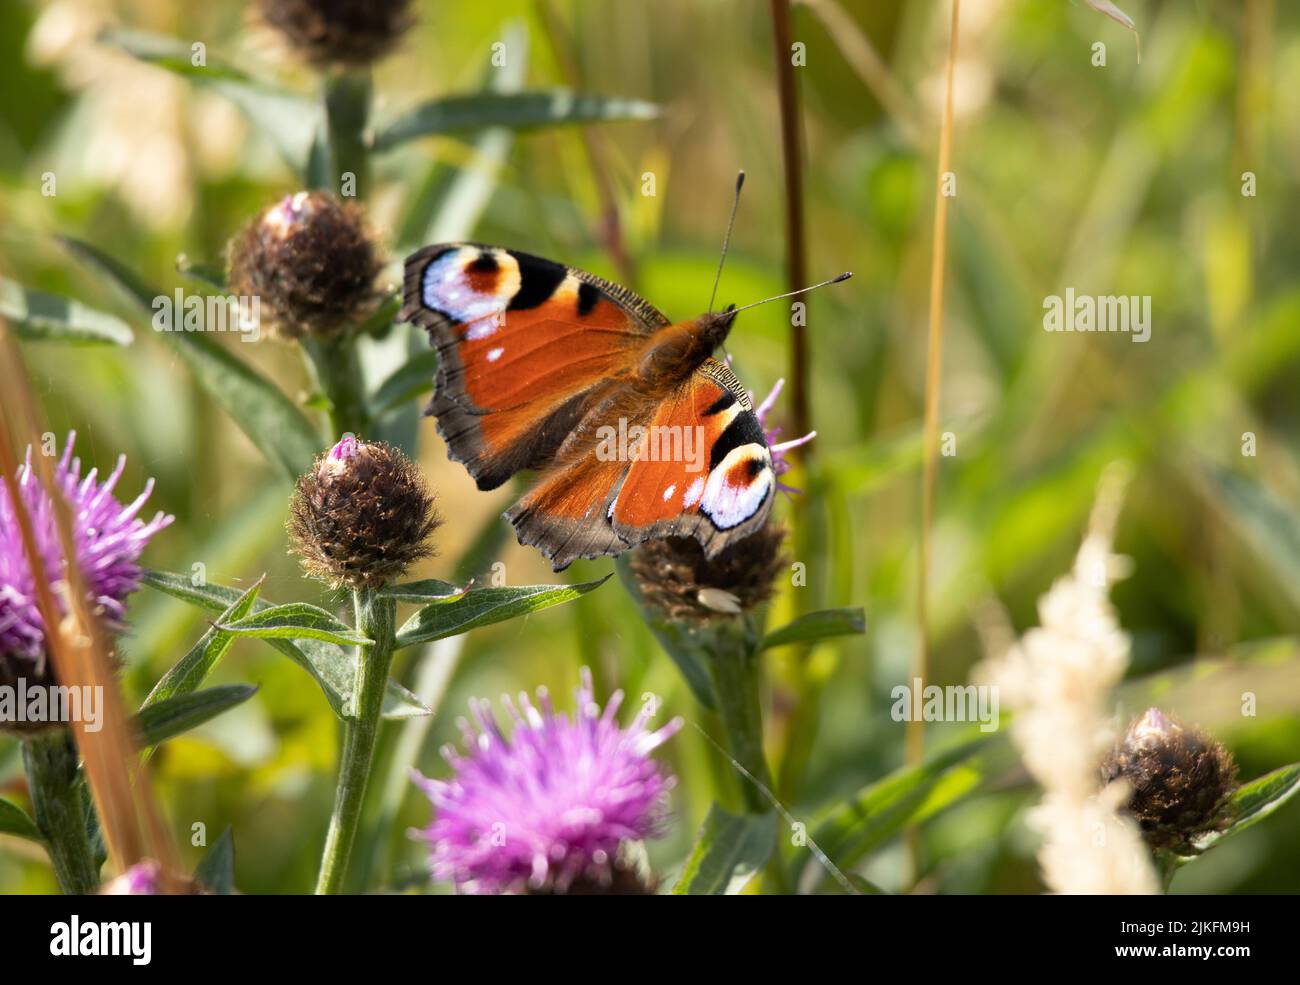 Der Pfau, ein schöner und unverwechselbarer Schmetterling, wird im Frühling und Sommer in Großbritannien gefunden. Ihre Raupen ernähren sich von Brennnesseln Stockfoto